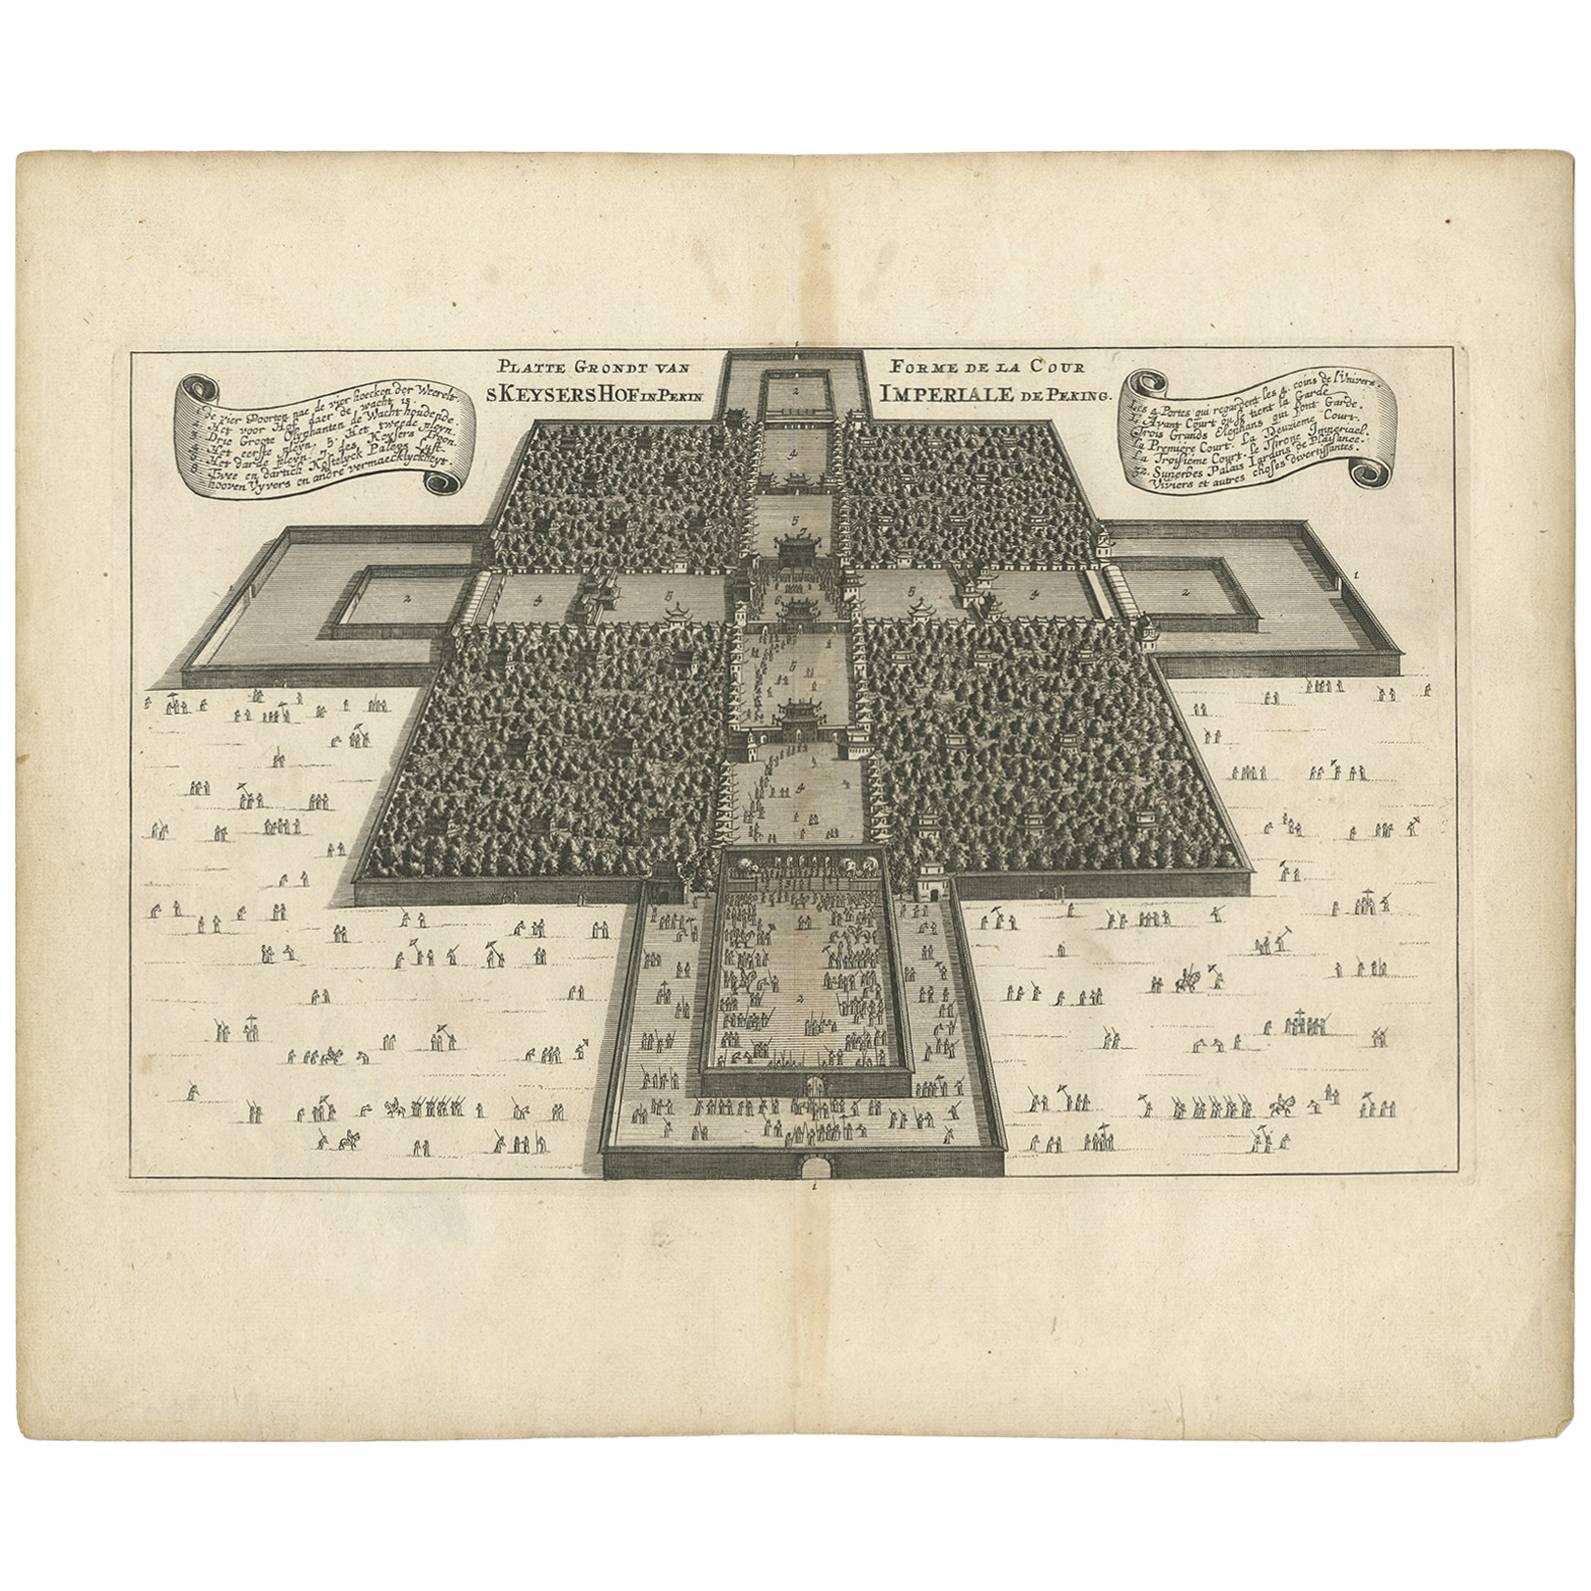 Rare carte ancienne de la cour impériale de Pékin en Chine, 1665